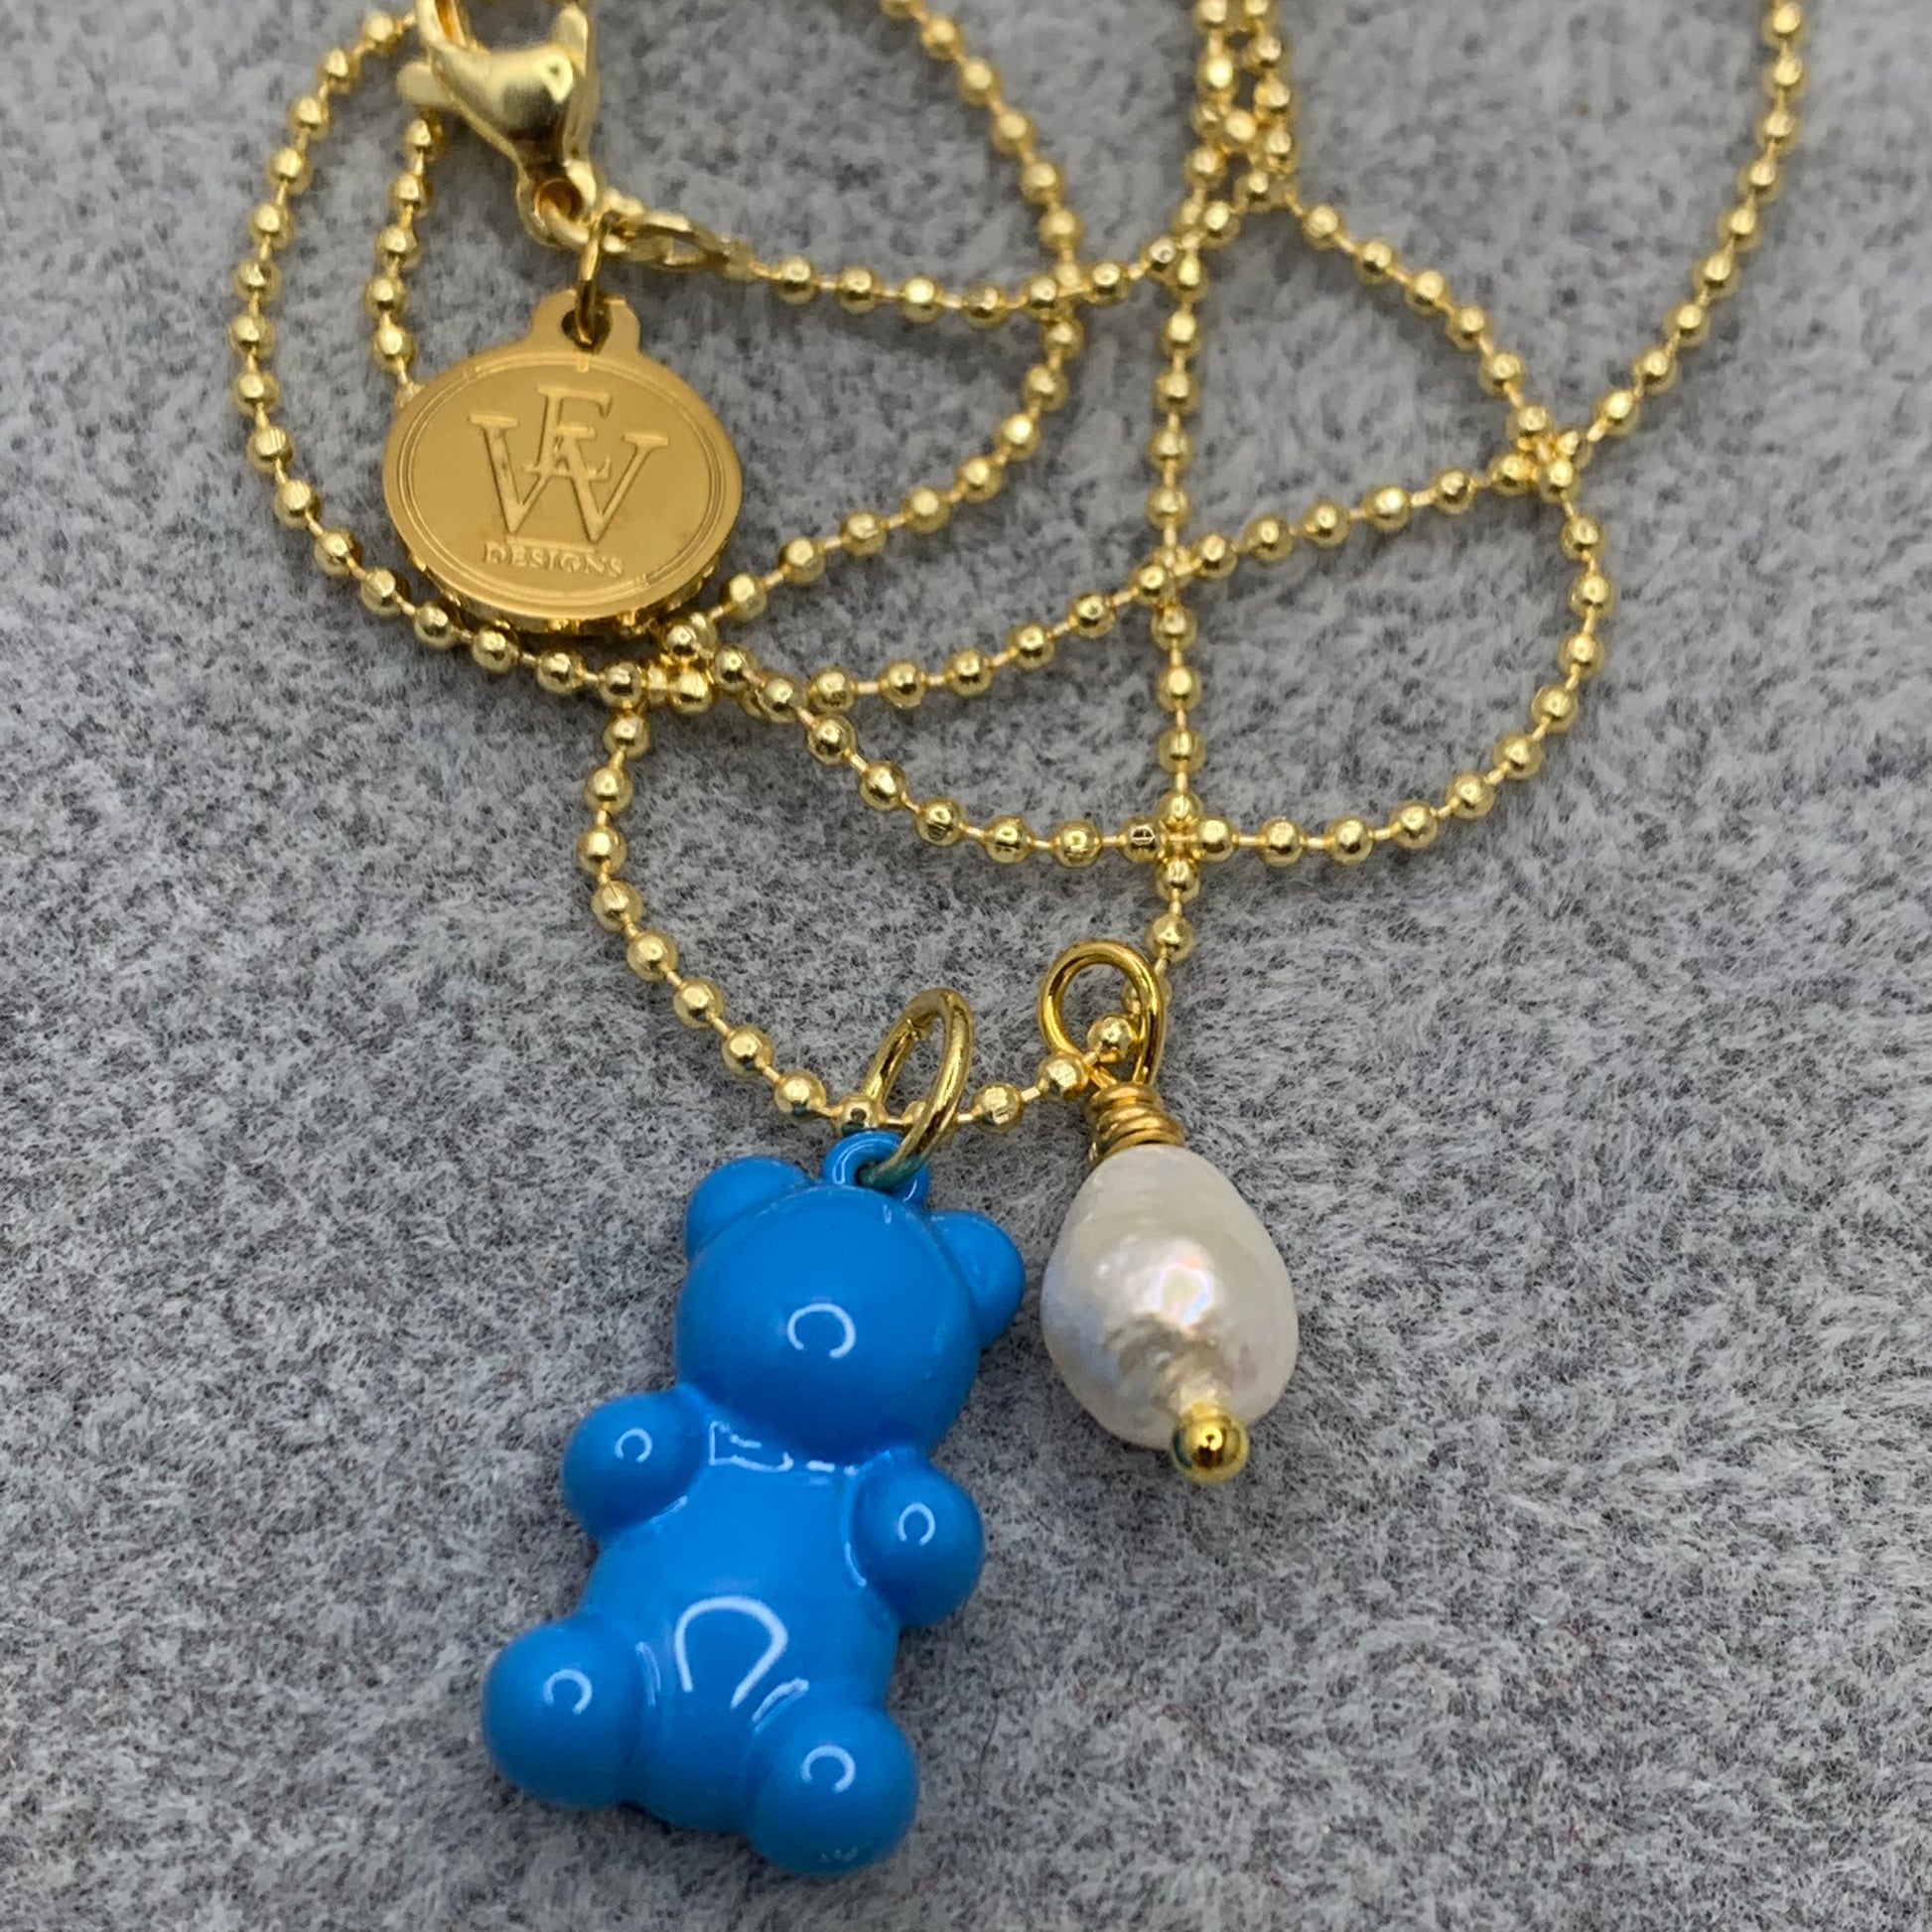 Blue enameled gummy bear pendant